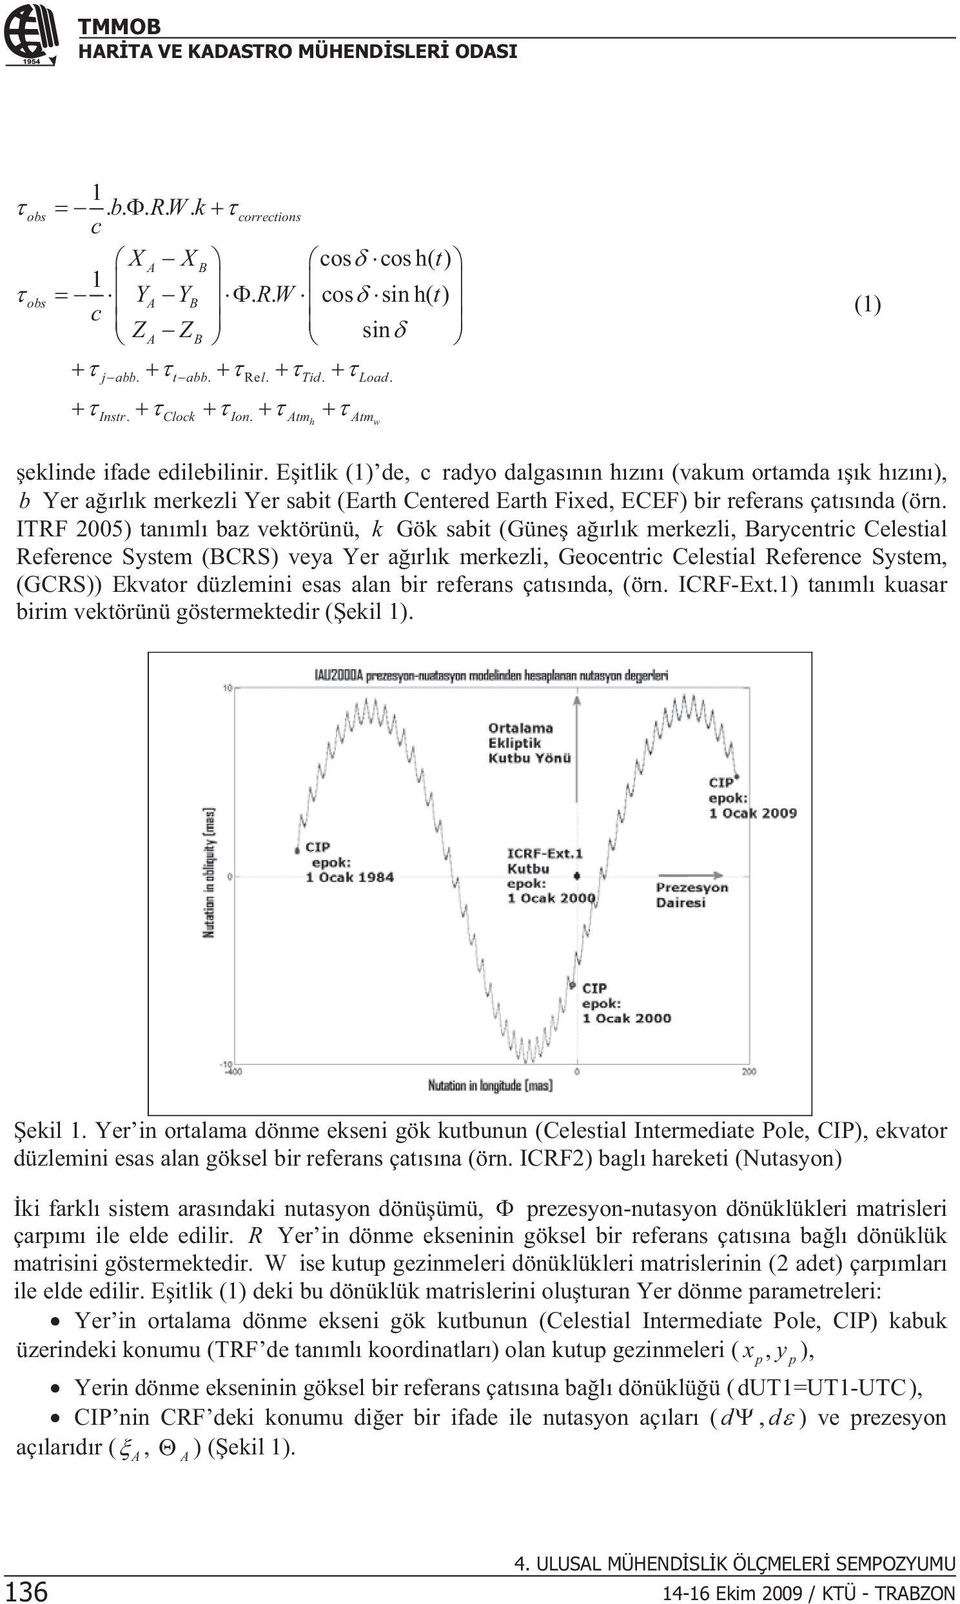 ITRF 2005) tanml baz vektörünü, k Gök sabt (Güne arlk merkezl, Barycentrc Celestal Reference System (BCRS) veya Yer arlk merkezl, Geocentrc Celestal Reference System, (GCRS)) Ekvator düzlemn esas